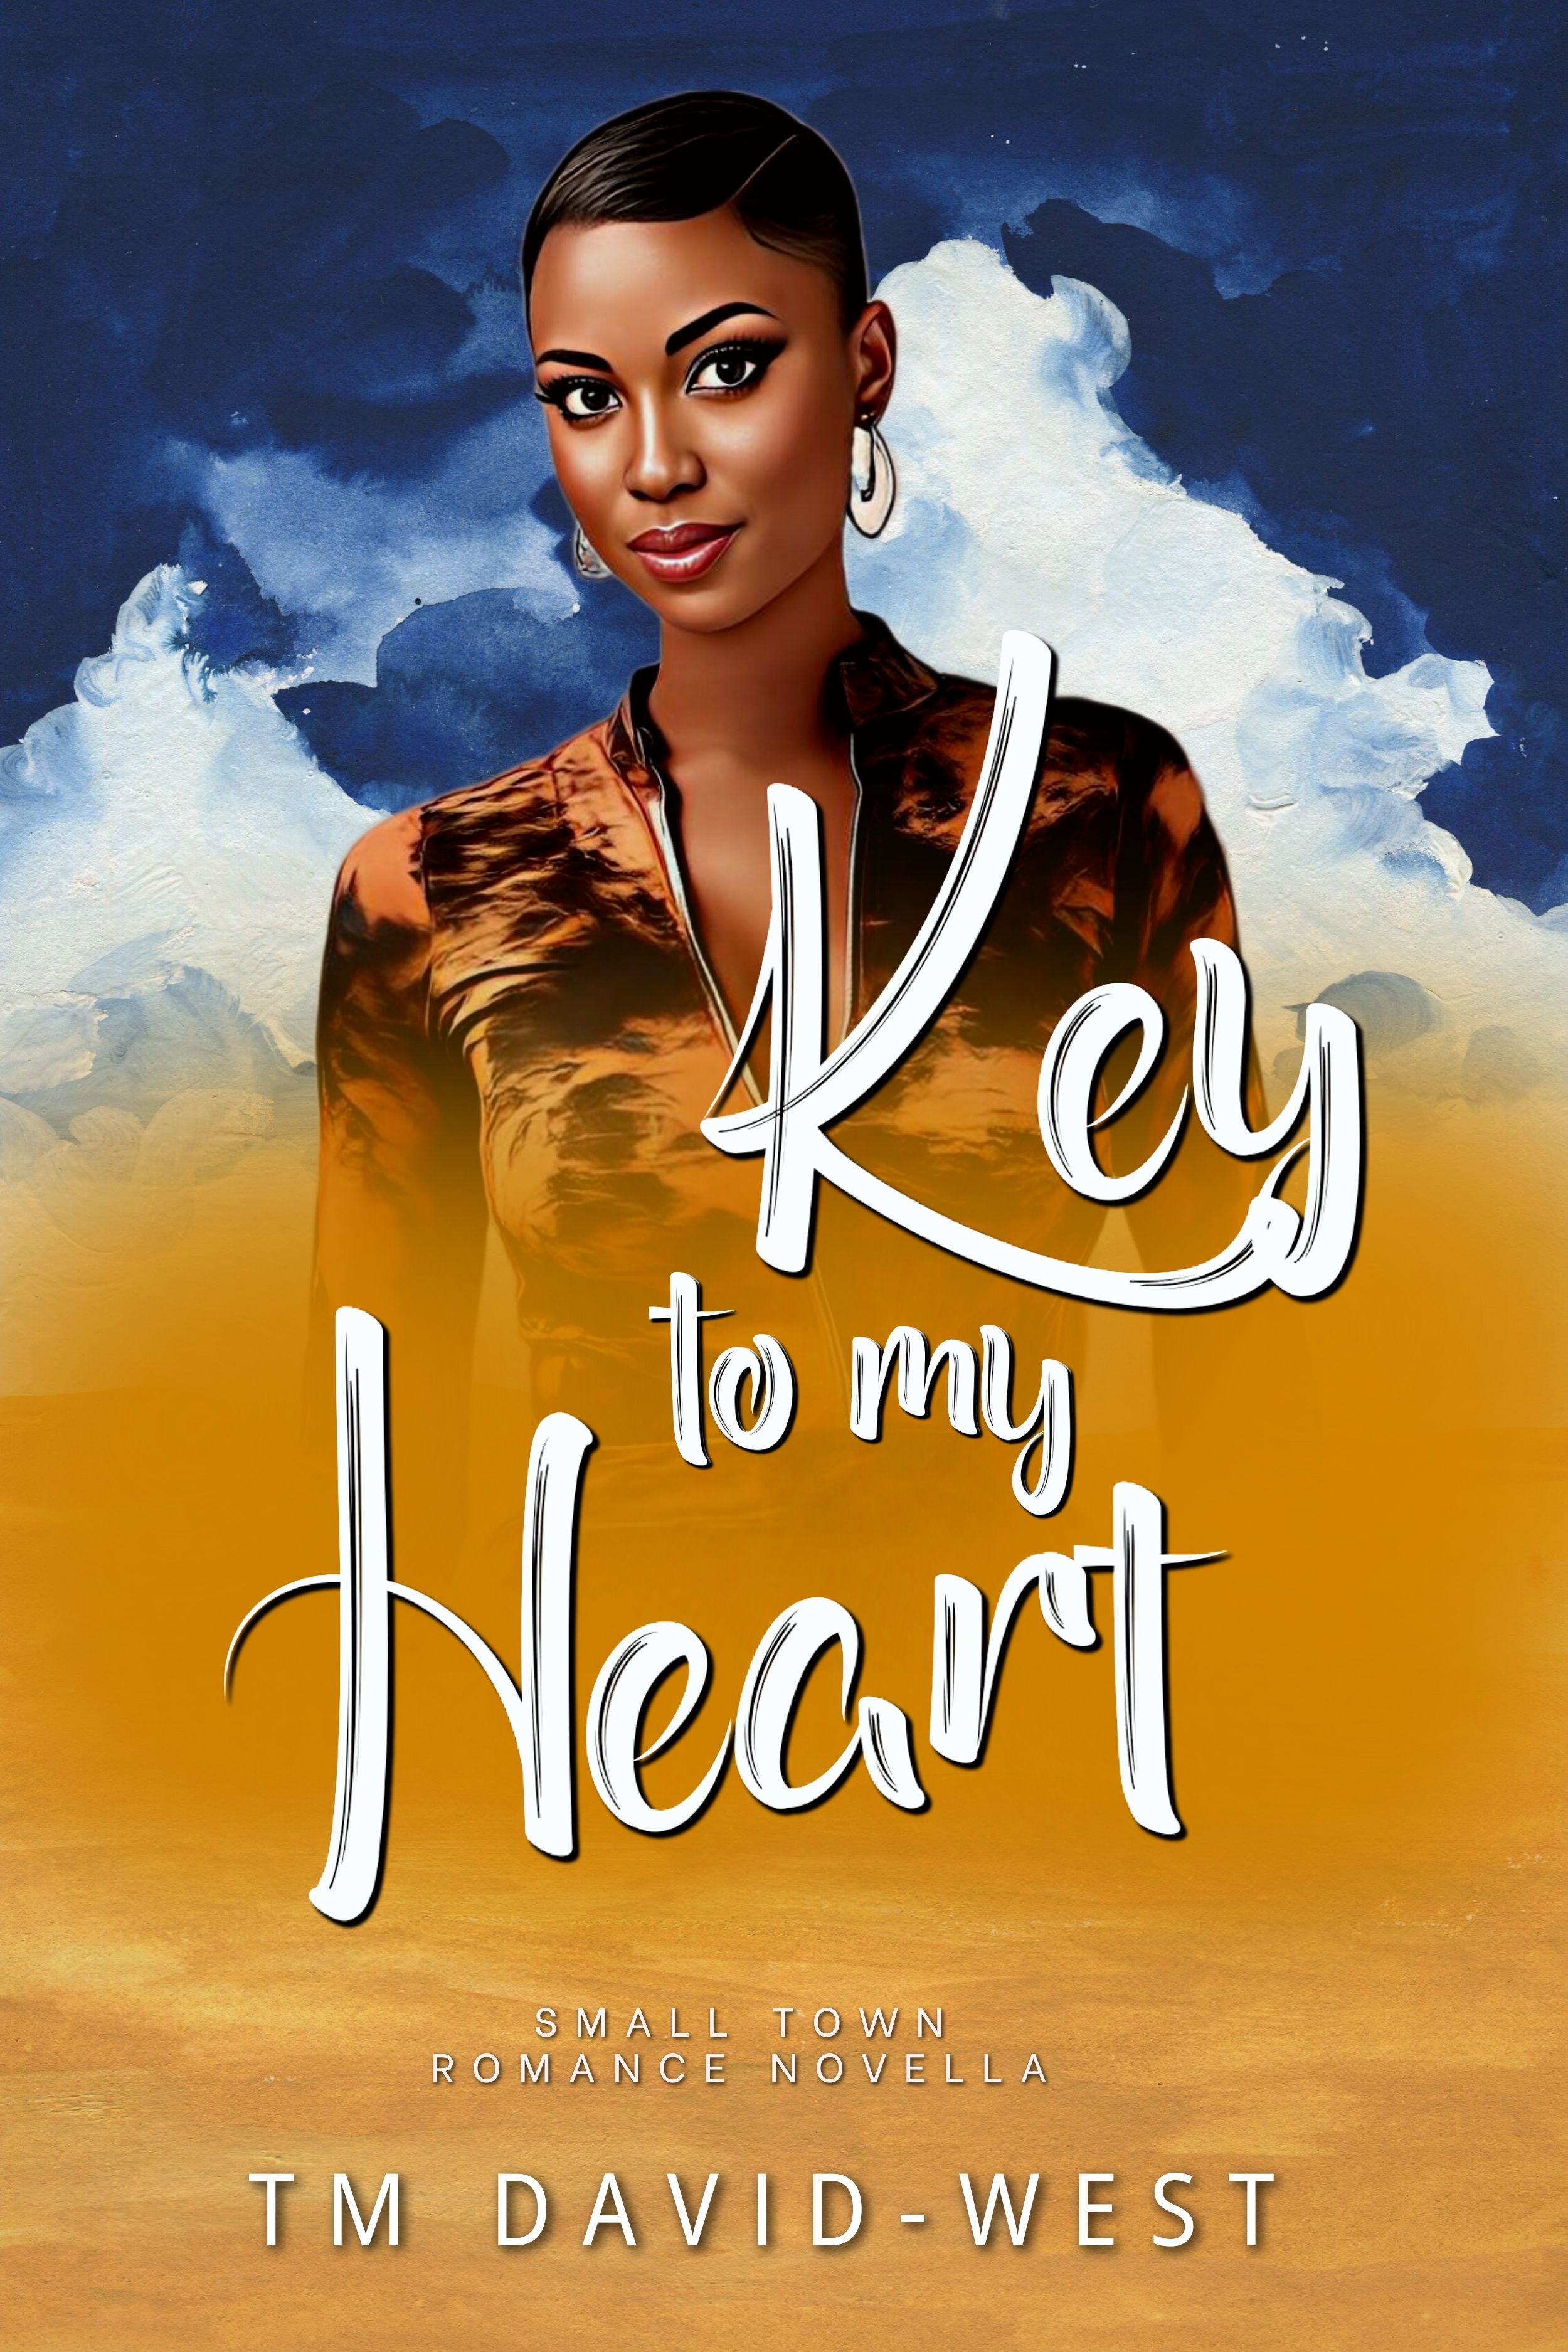 Key-to-my-Heart